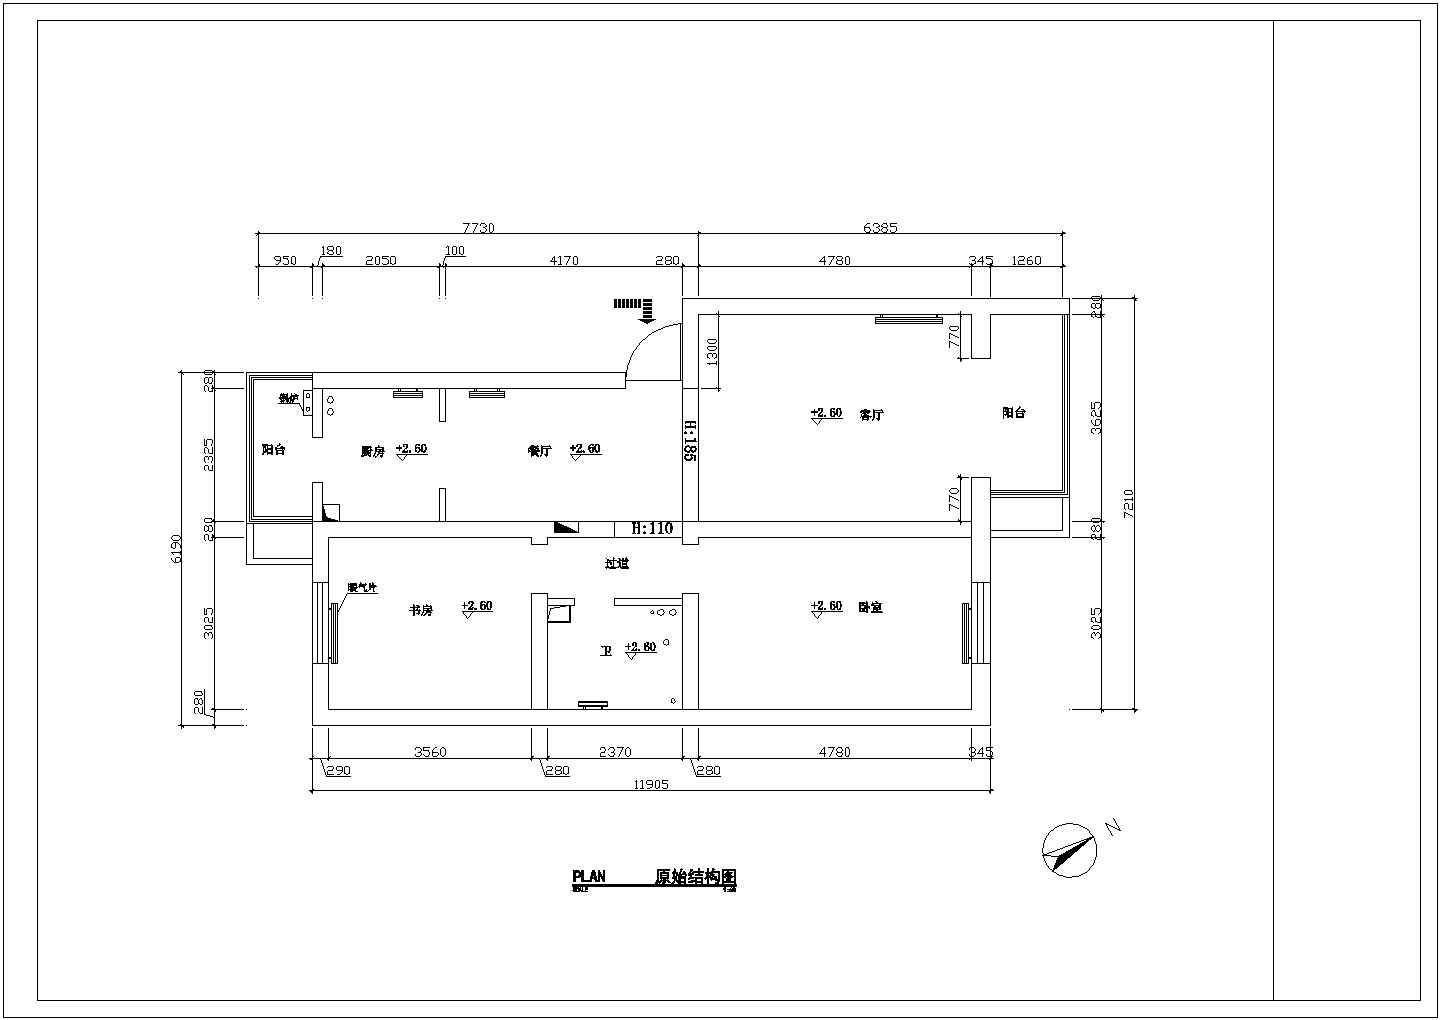 某地区某二房一厅户型家装建筑设计施工图